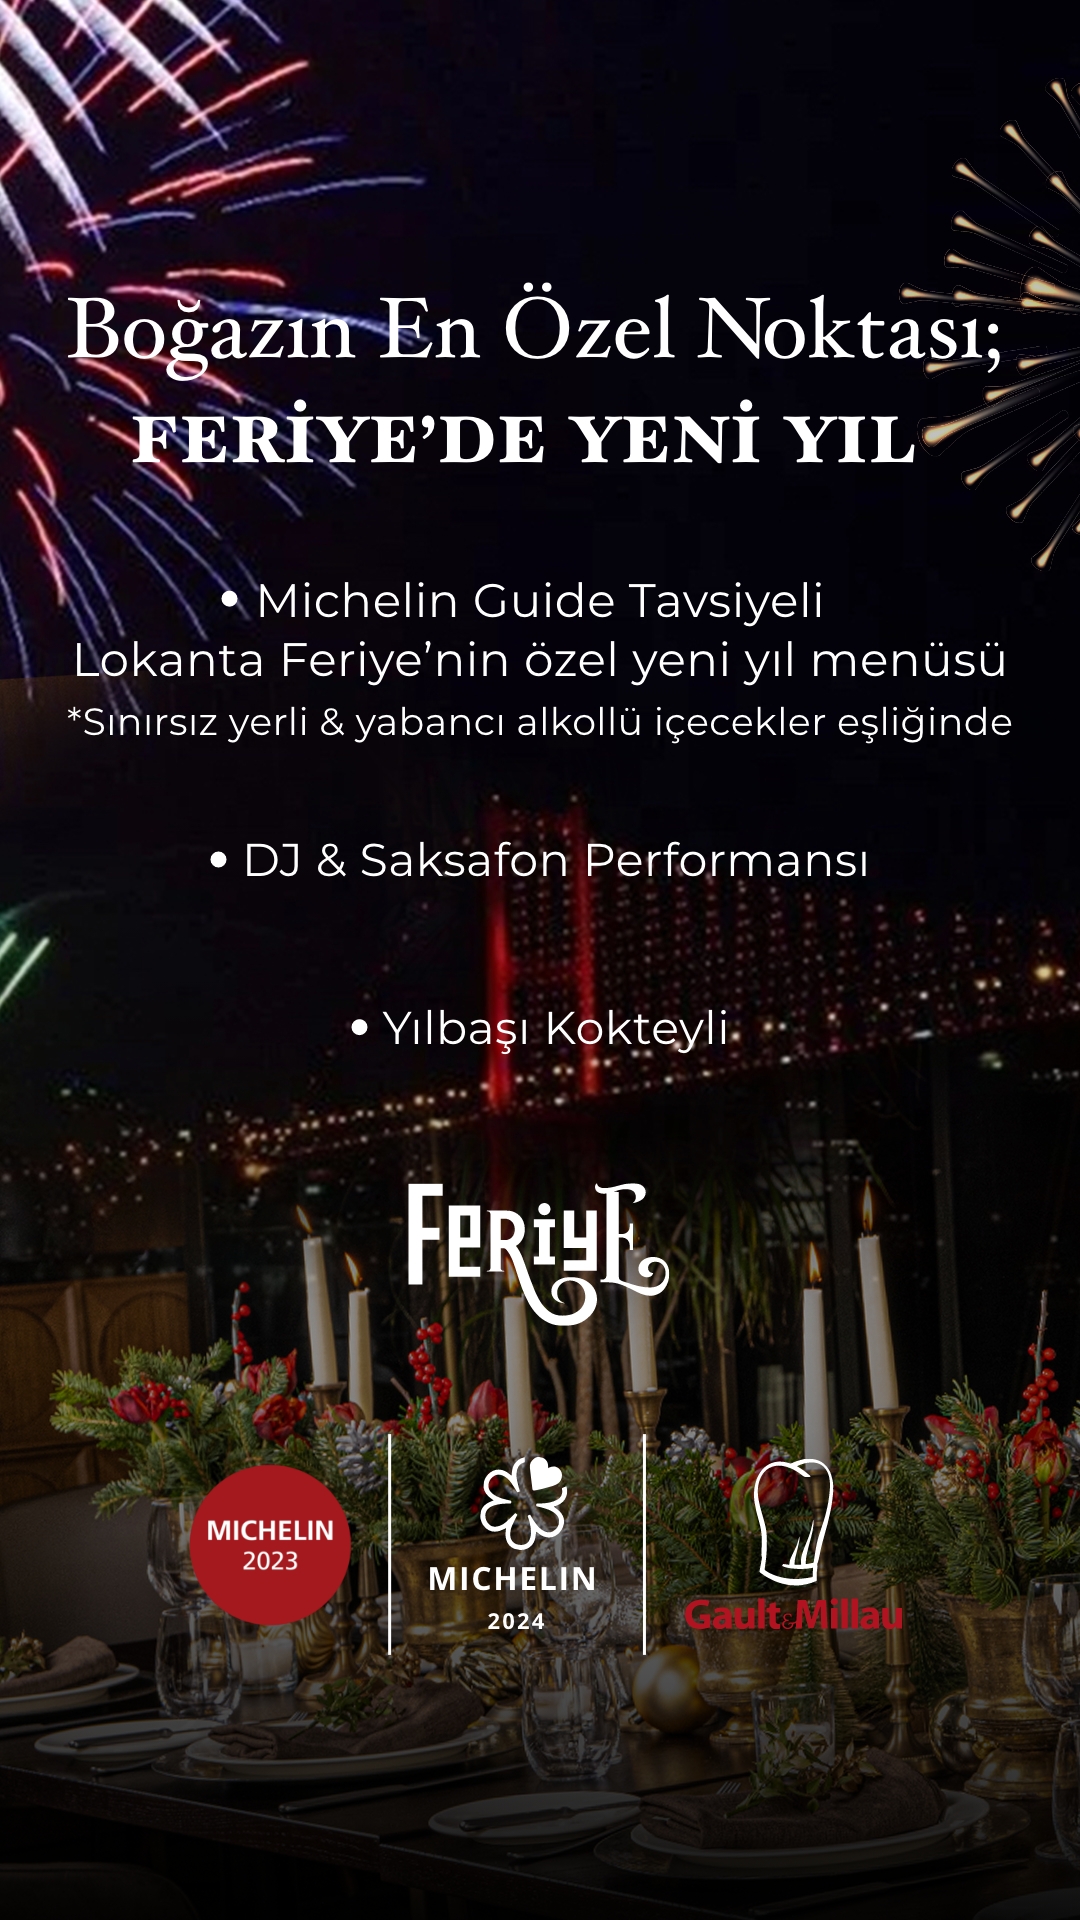 Feriye'de Yılbaşı Gecesi - New Year's Eve Feriye